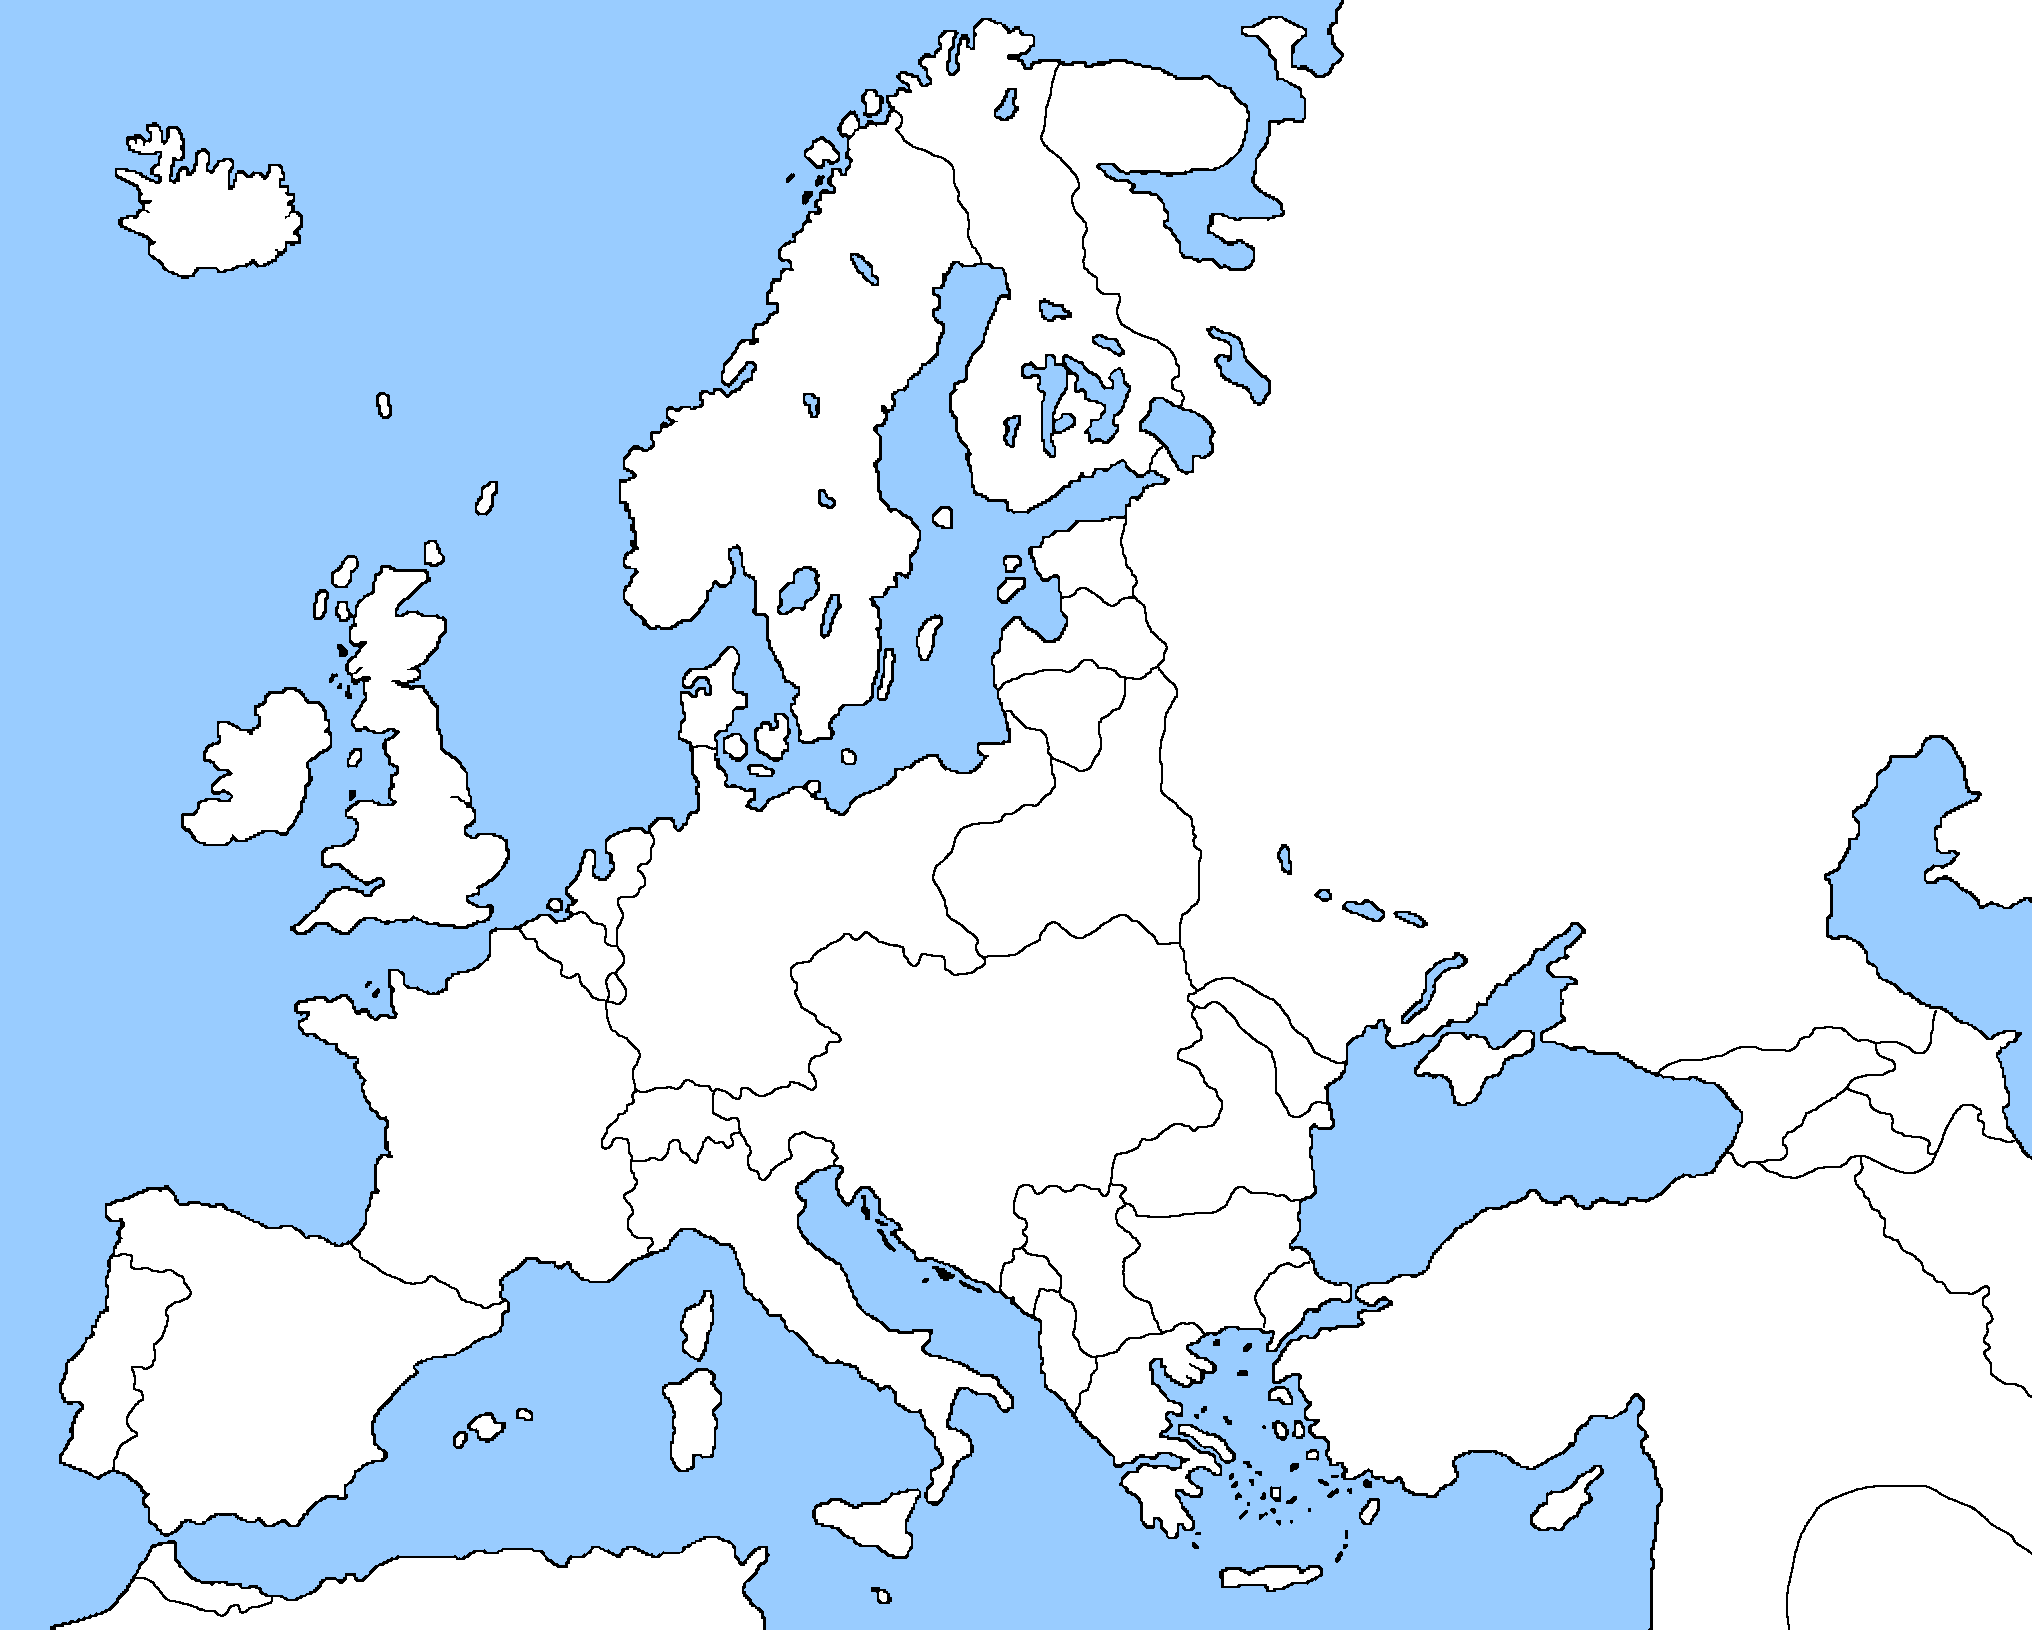 europe-1914-map-quiz-living-room-design-2020